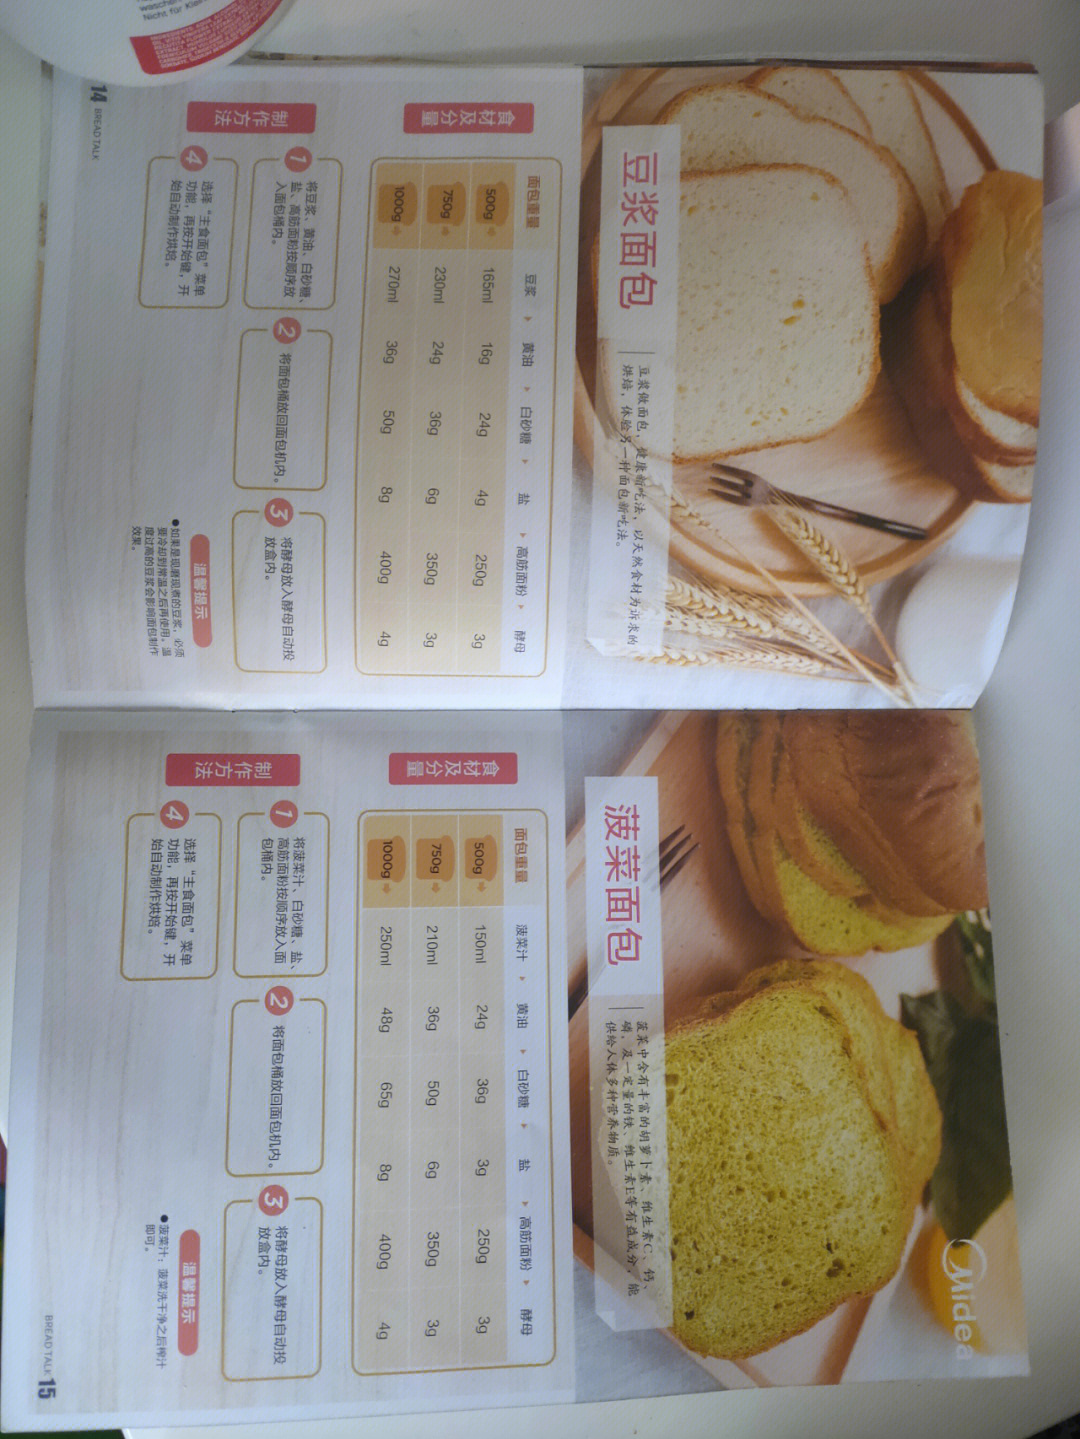 东菱全自动面包机食谱图片